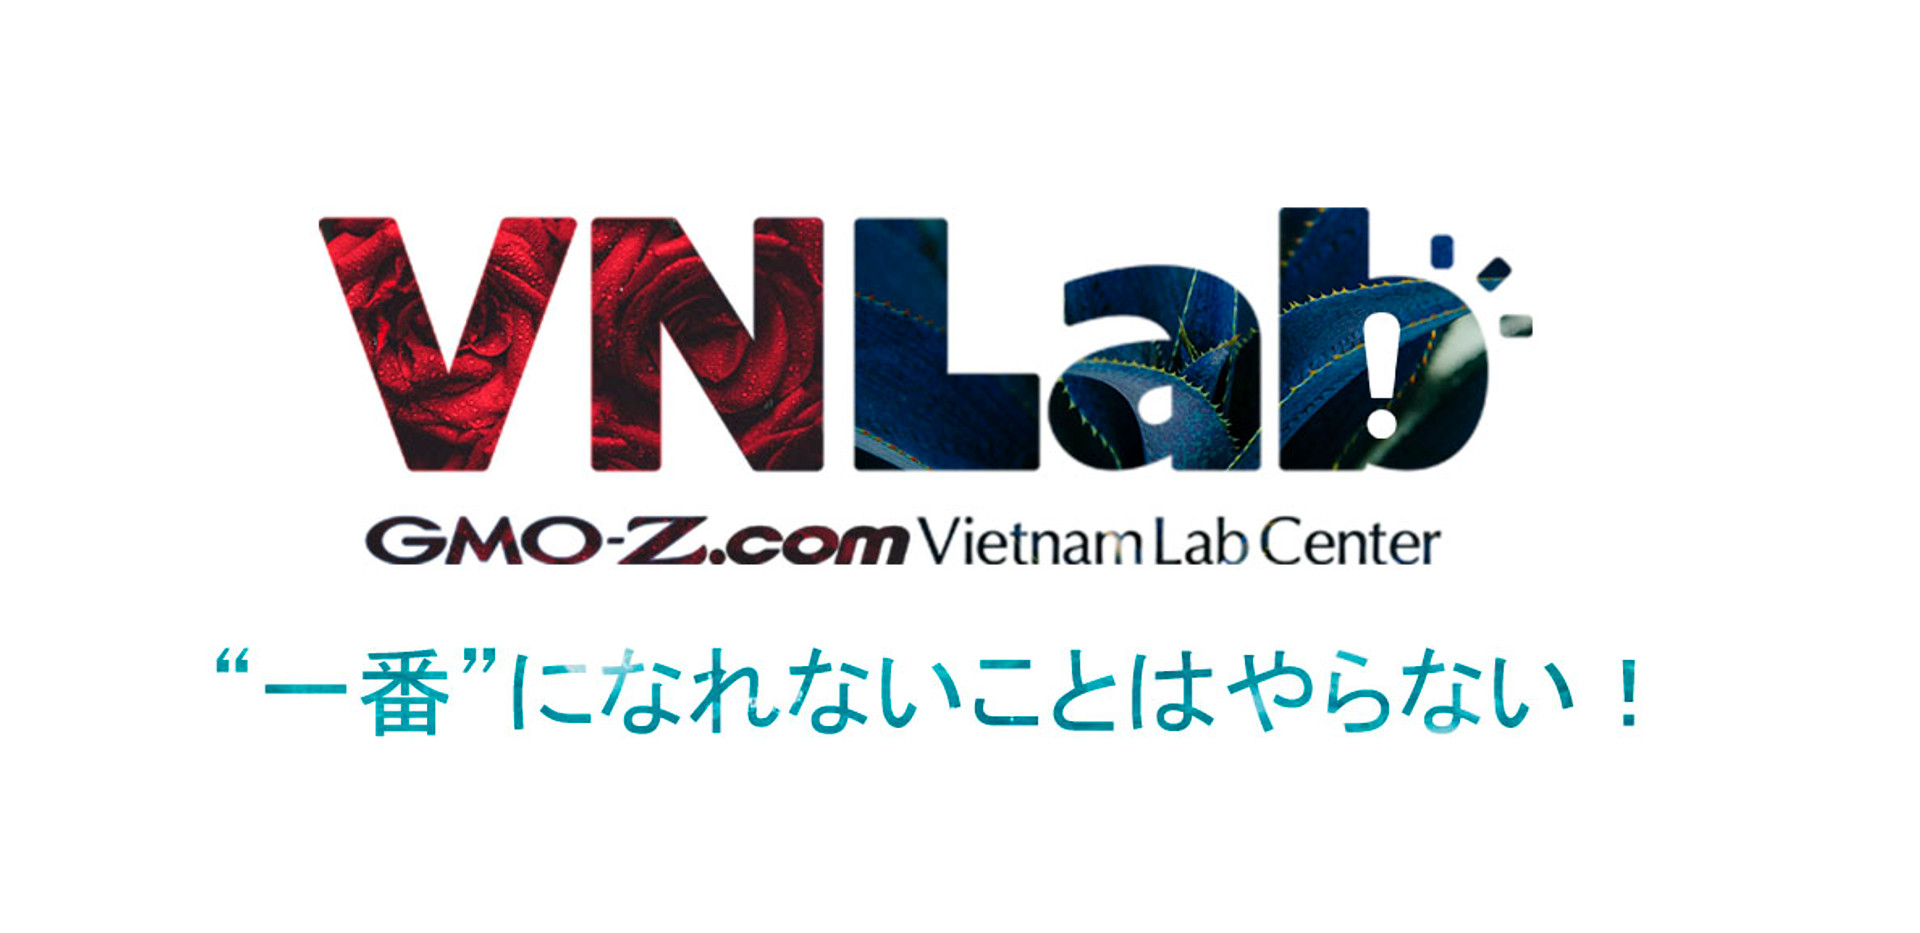 GMO-Z.com Vietnam Lab Center